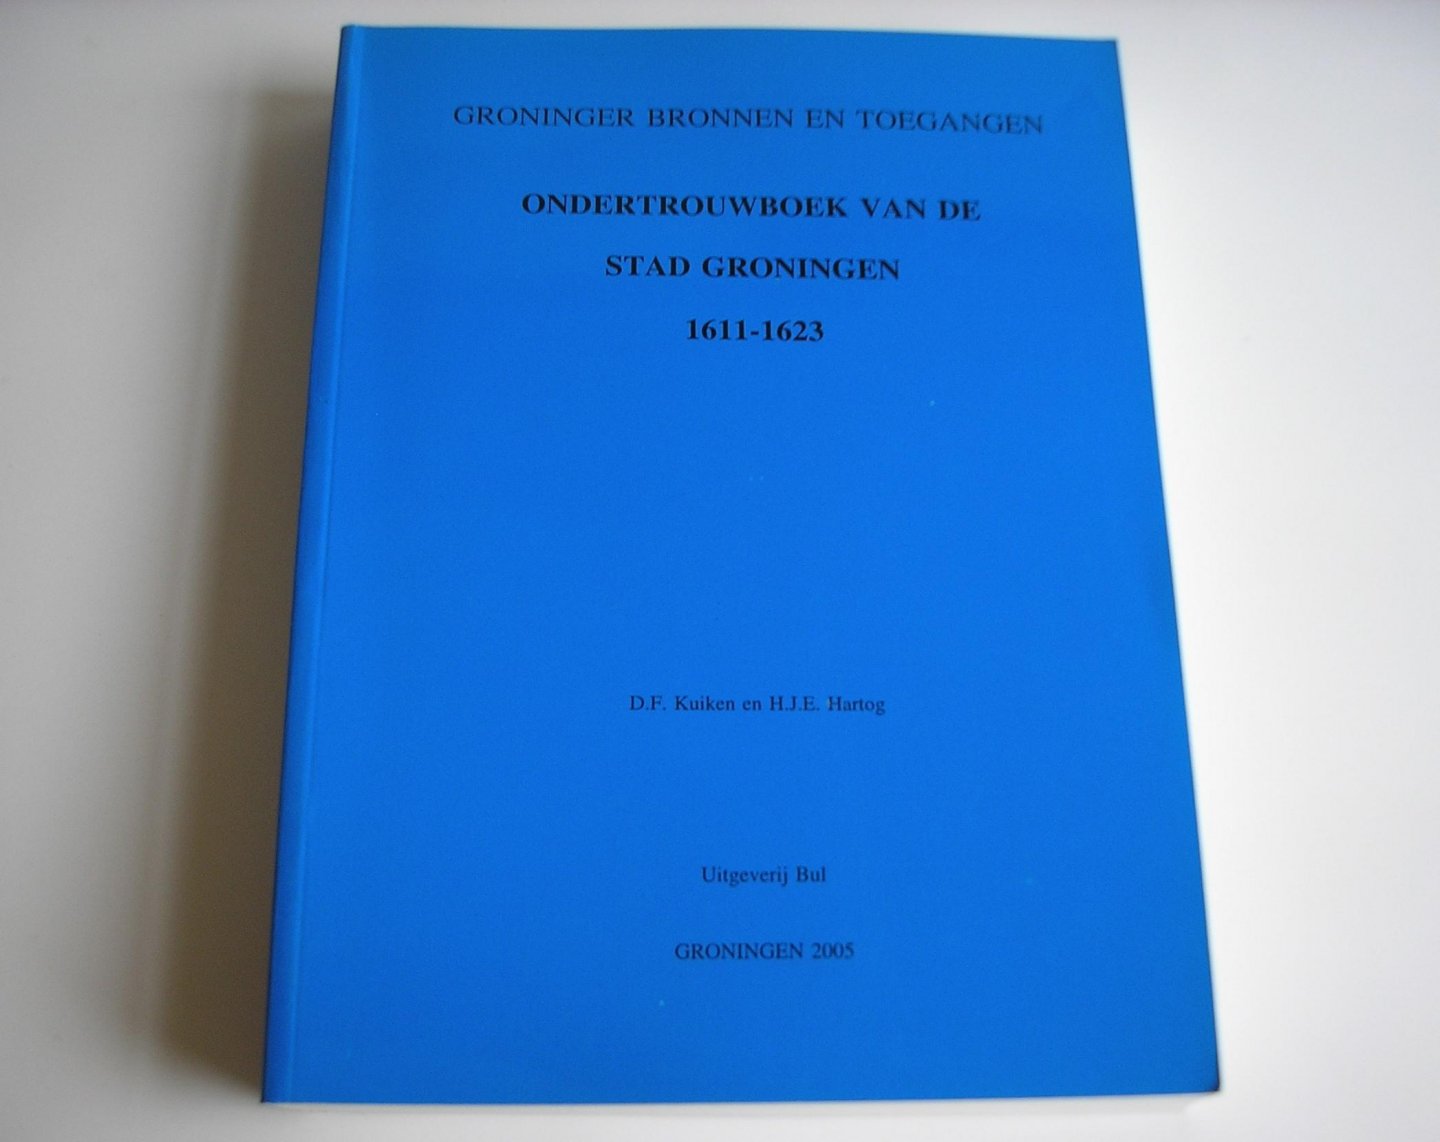 Kuiken, D.F., Hartog, H.J.E. - Ondertrouwboek van de stad Groningen 1611-1623.